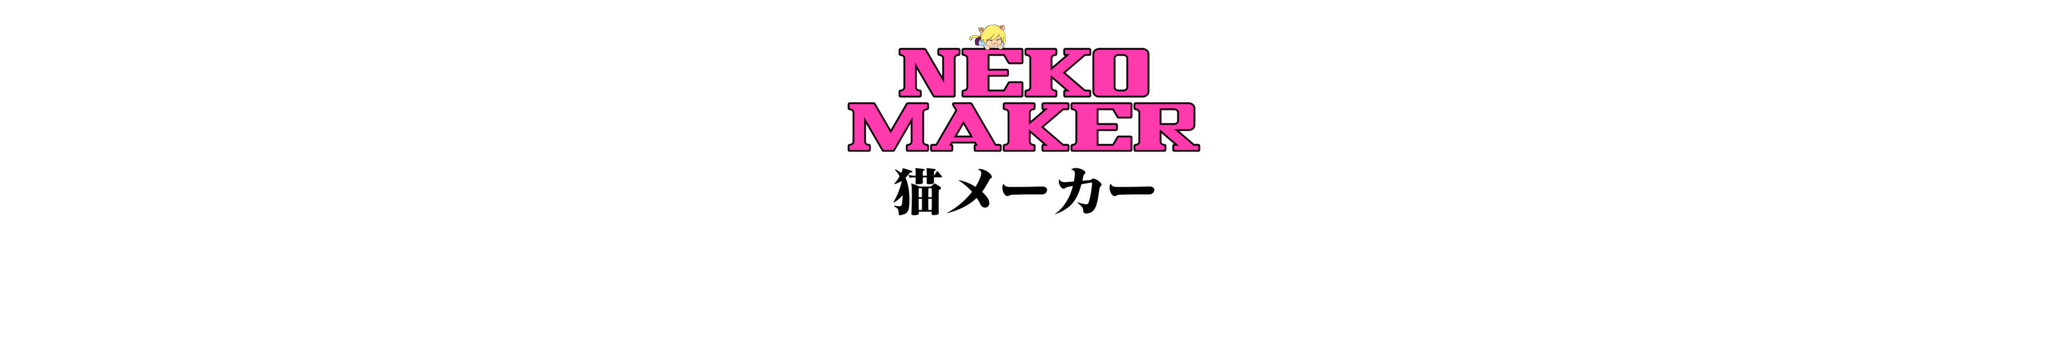 background for Neko Maker Ultimate: Return of the Gyatt